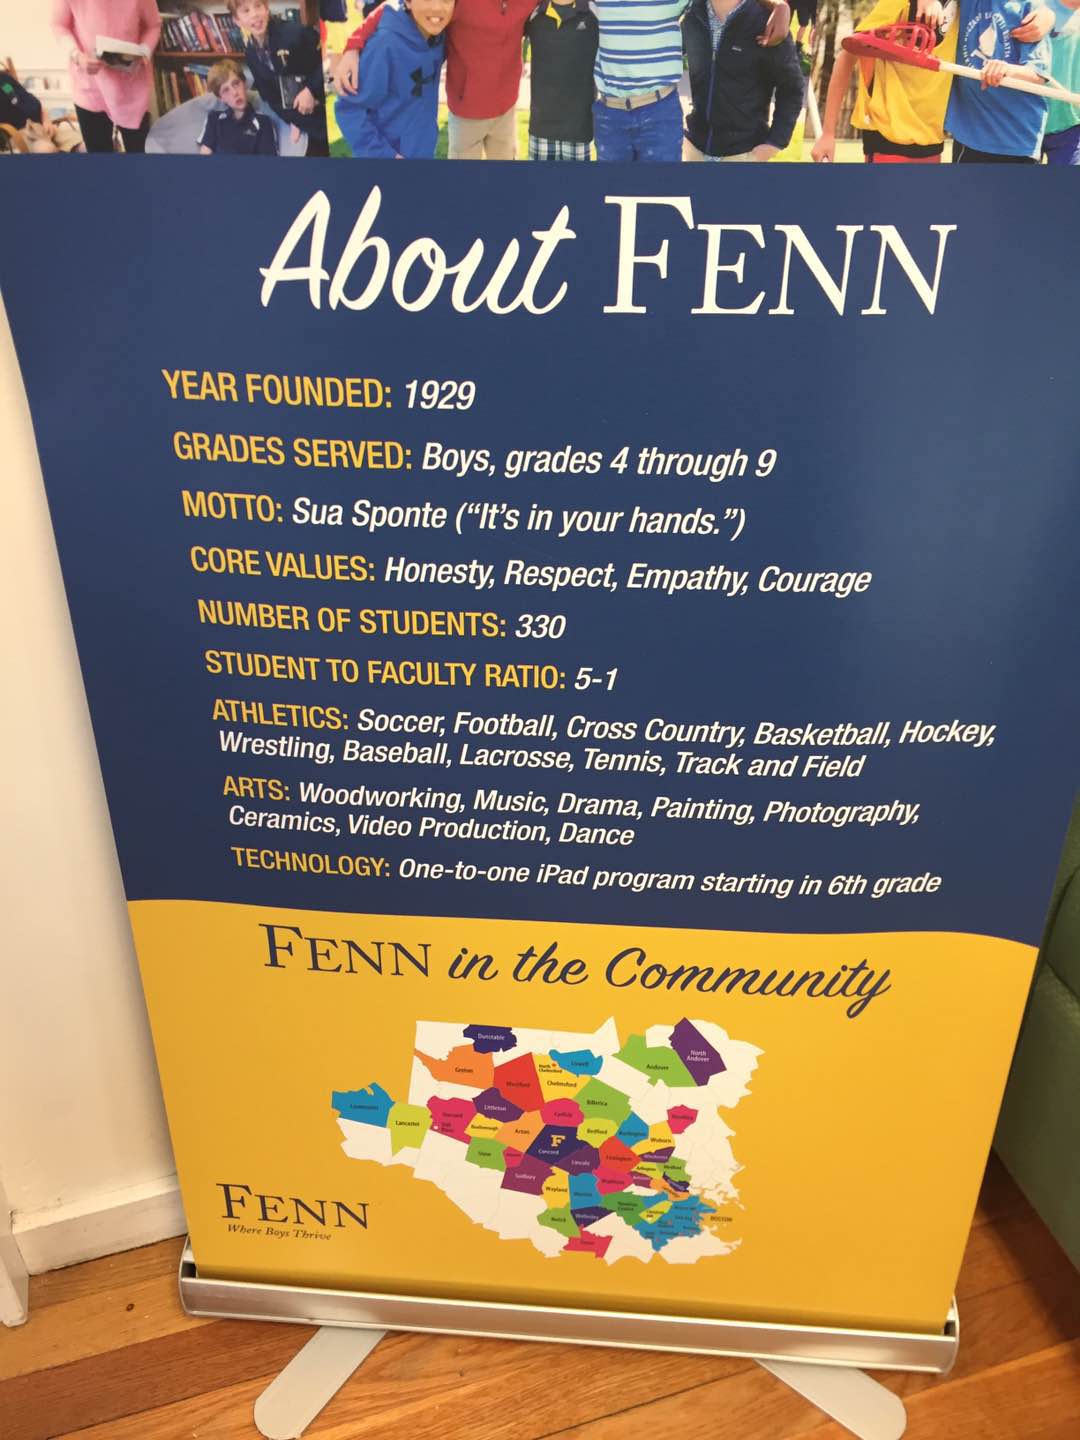 The Fenn School